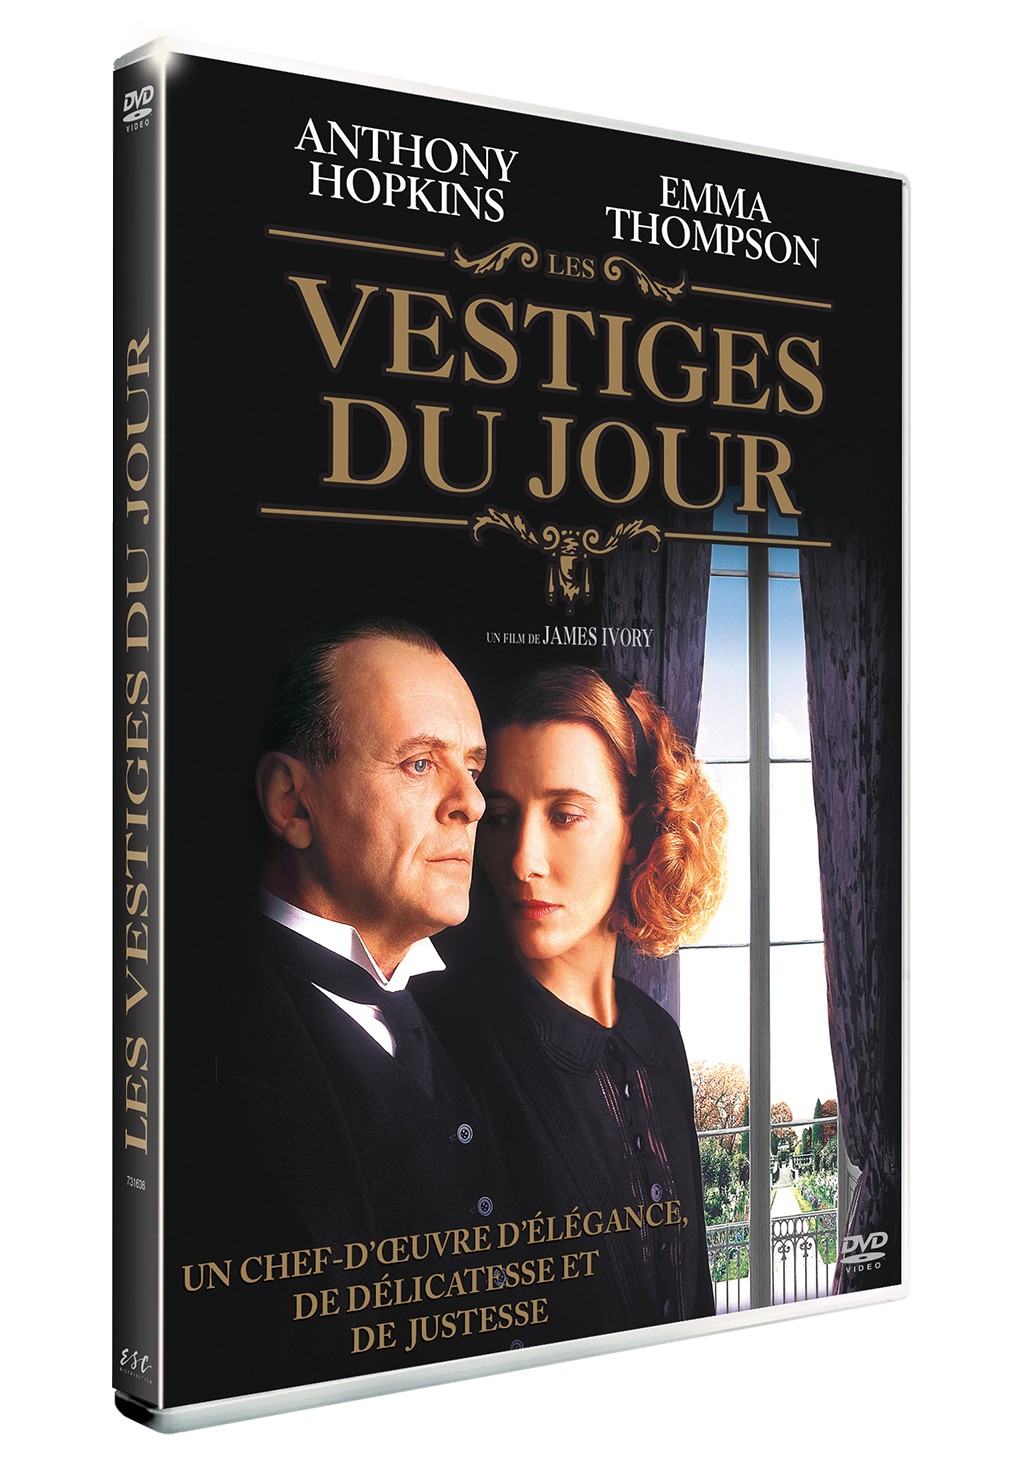 LES VESTIGES DU JOUR (THE REMAINS OF THE DAY) - DVD